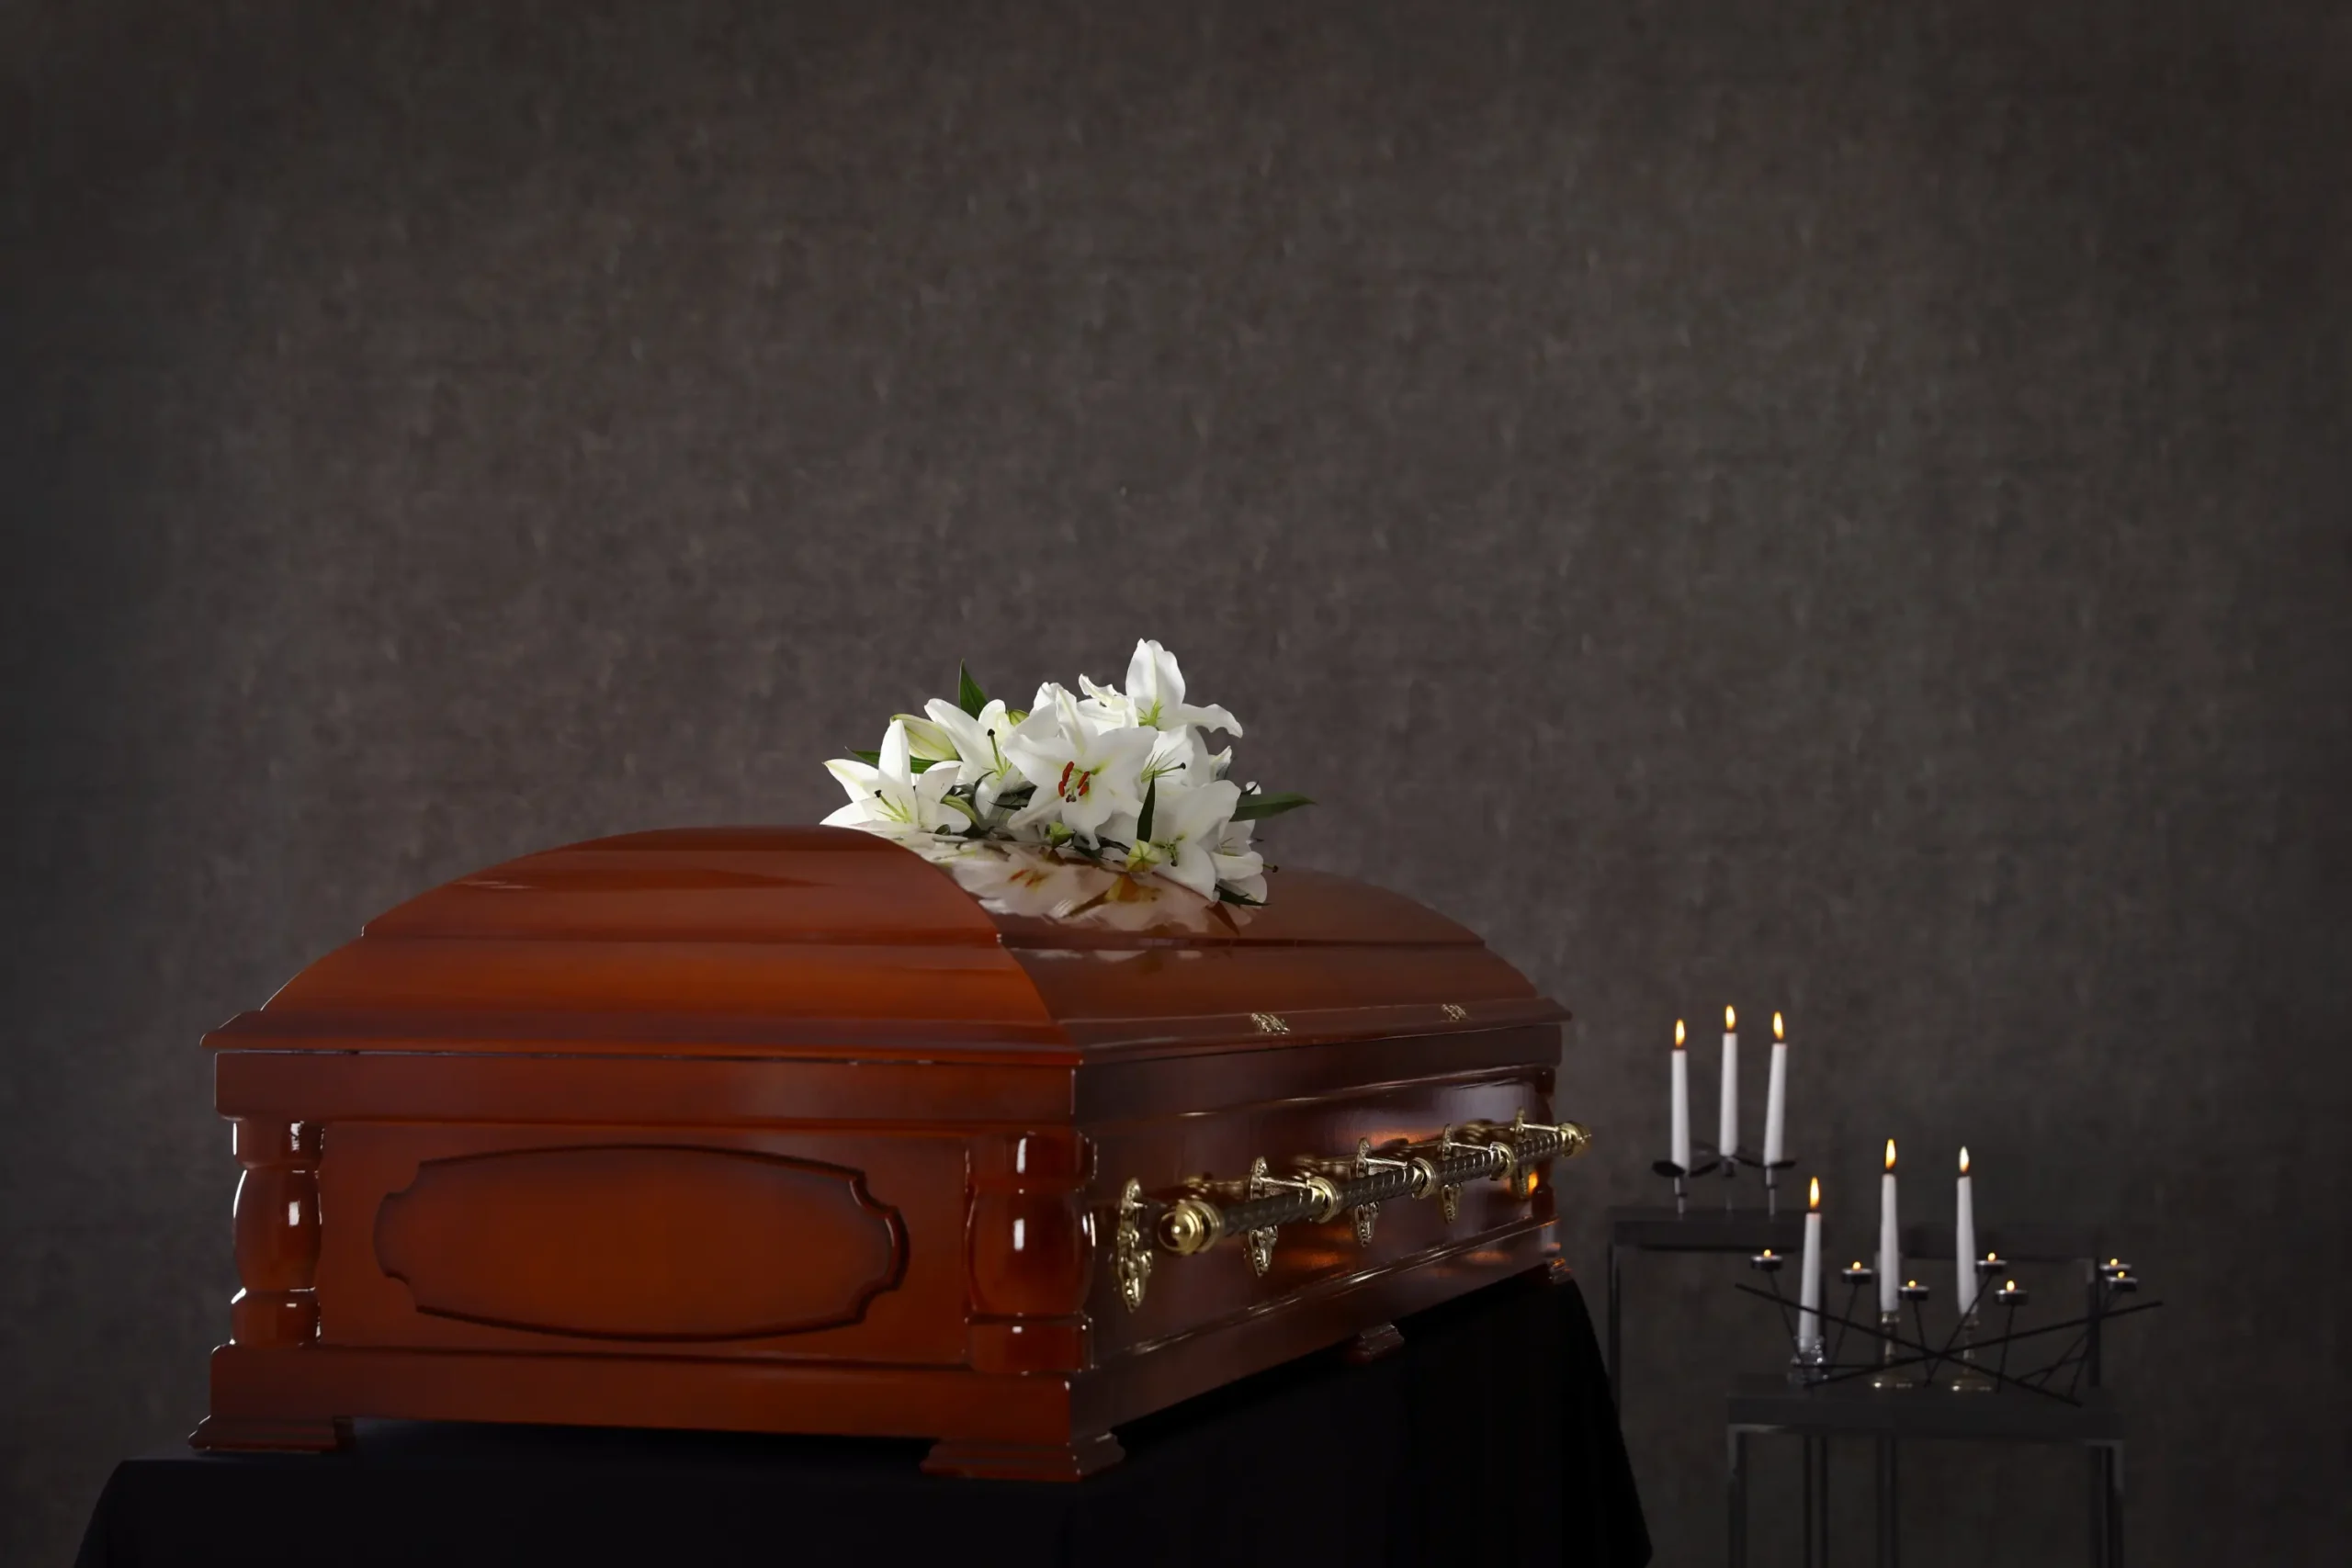 Hemsida till Begravningsbyra scaled Interwebsite Webbyrå